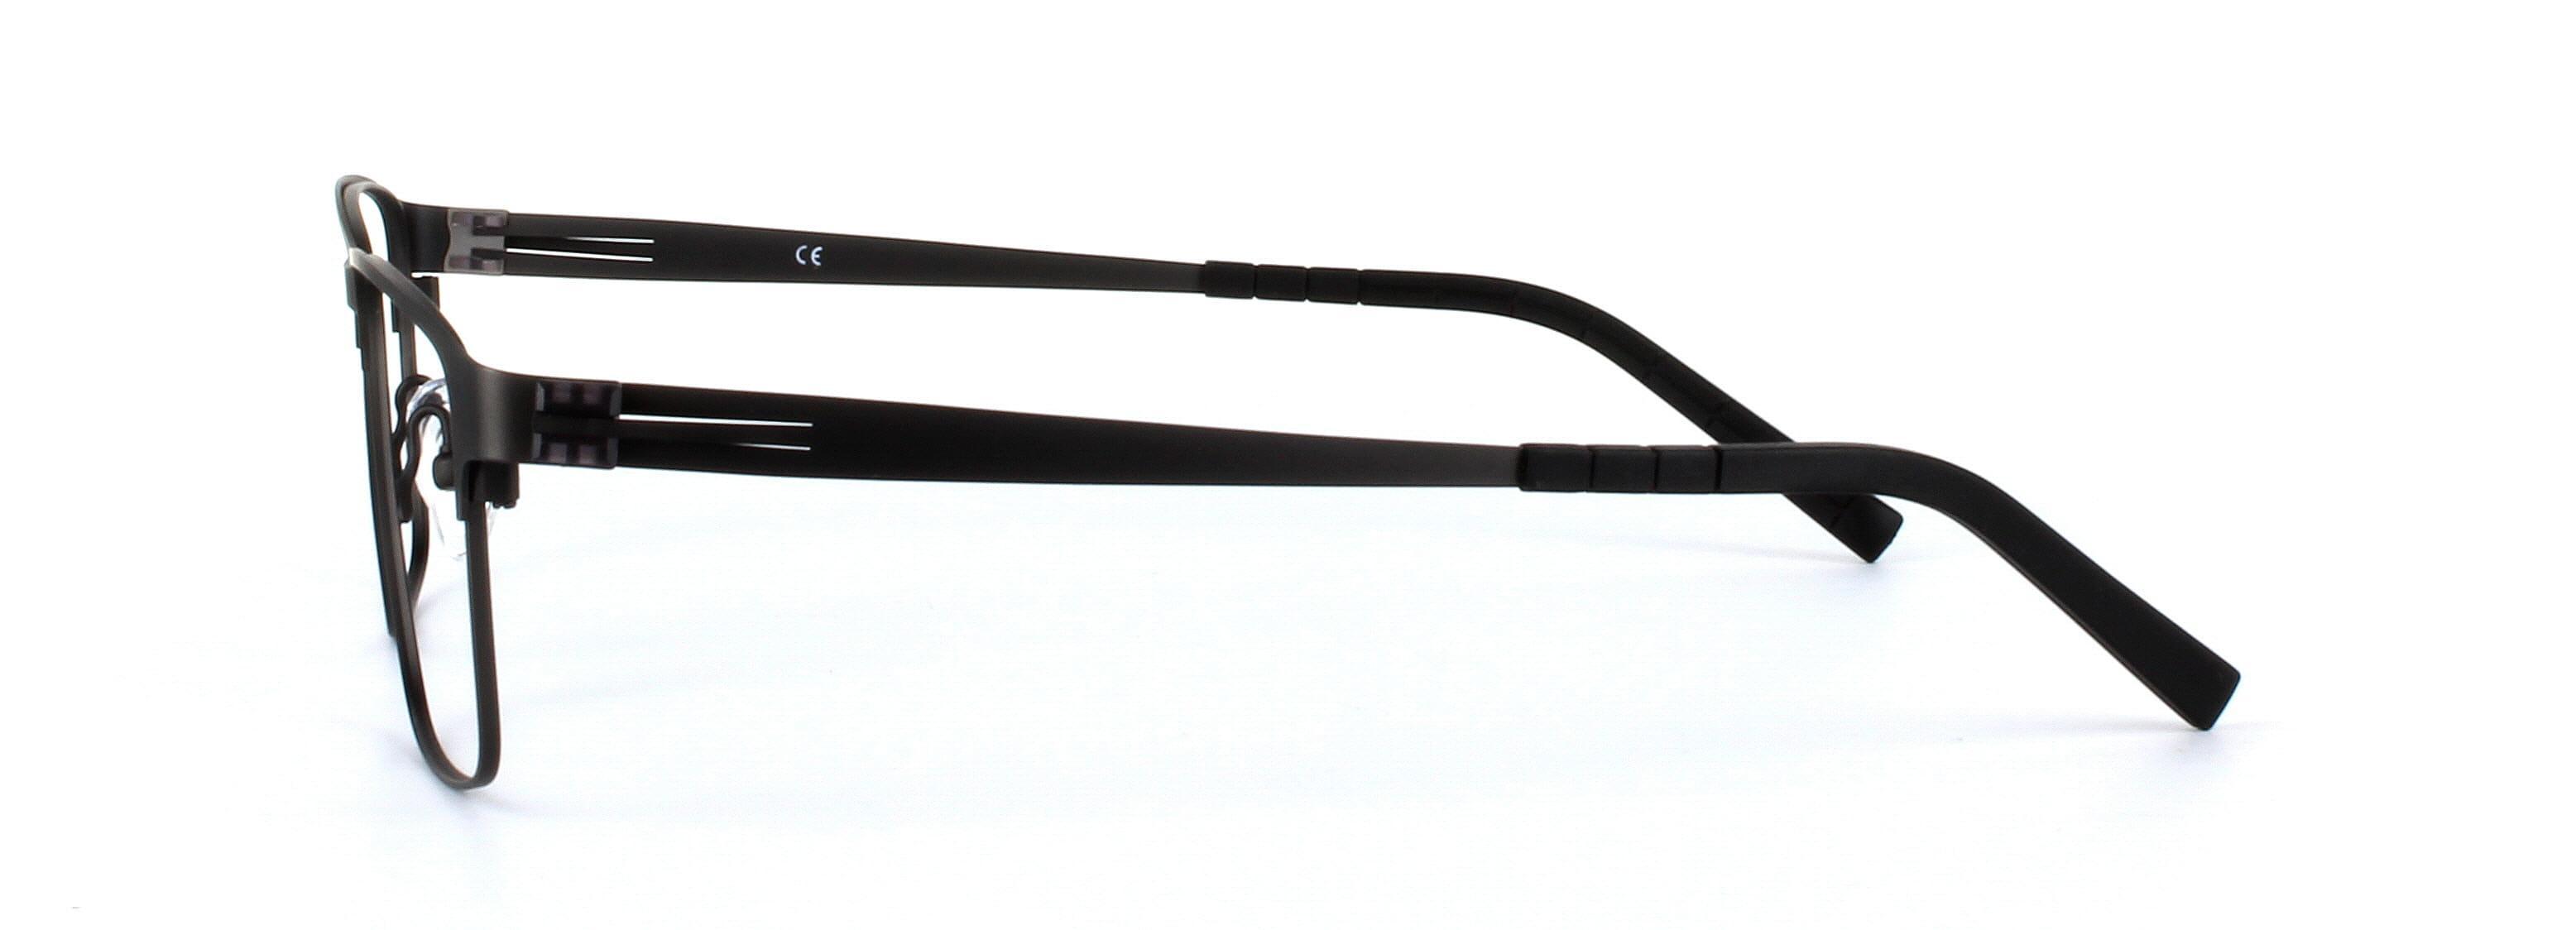 Divo Matt Black Full Rim Square Titanium Glasses - Image View 2